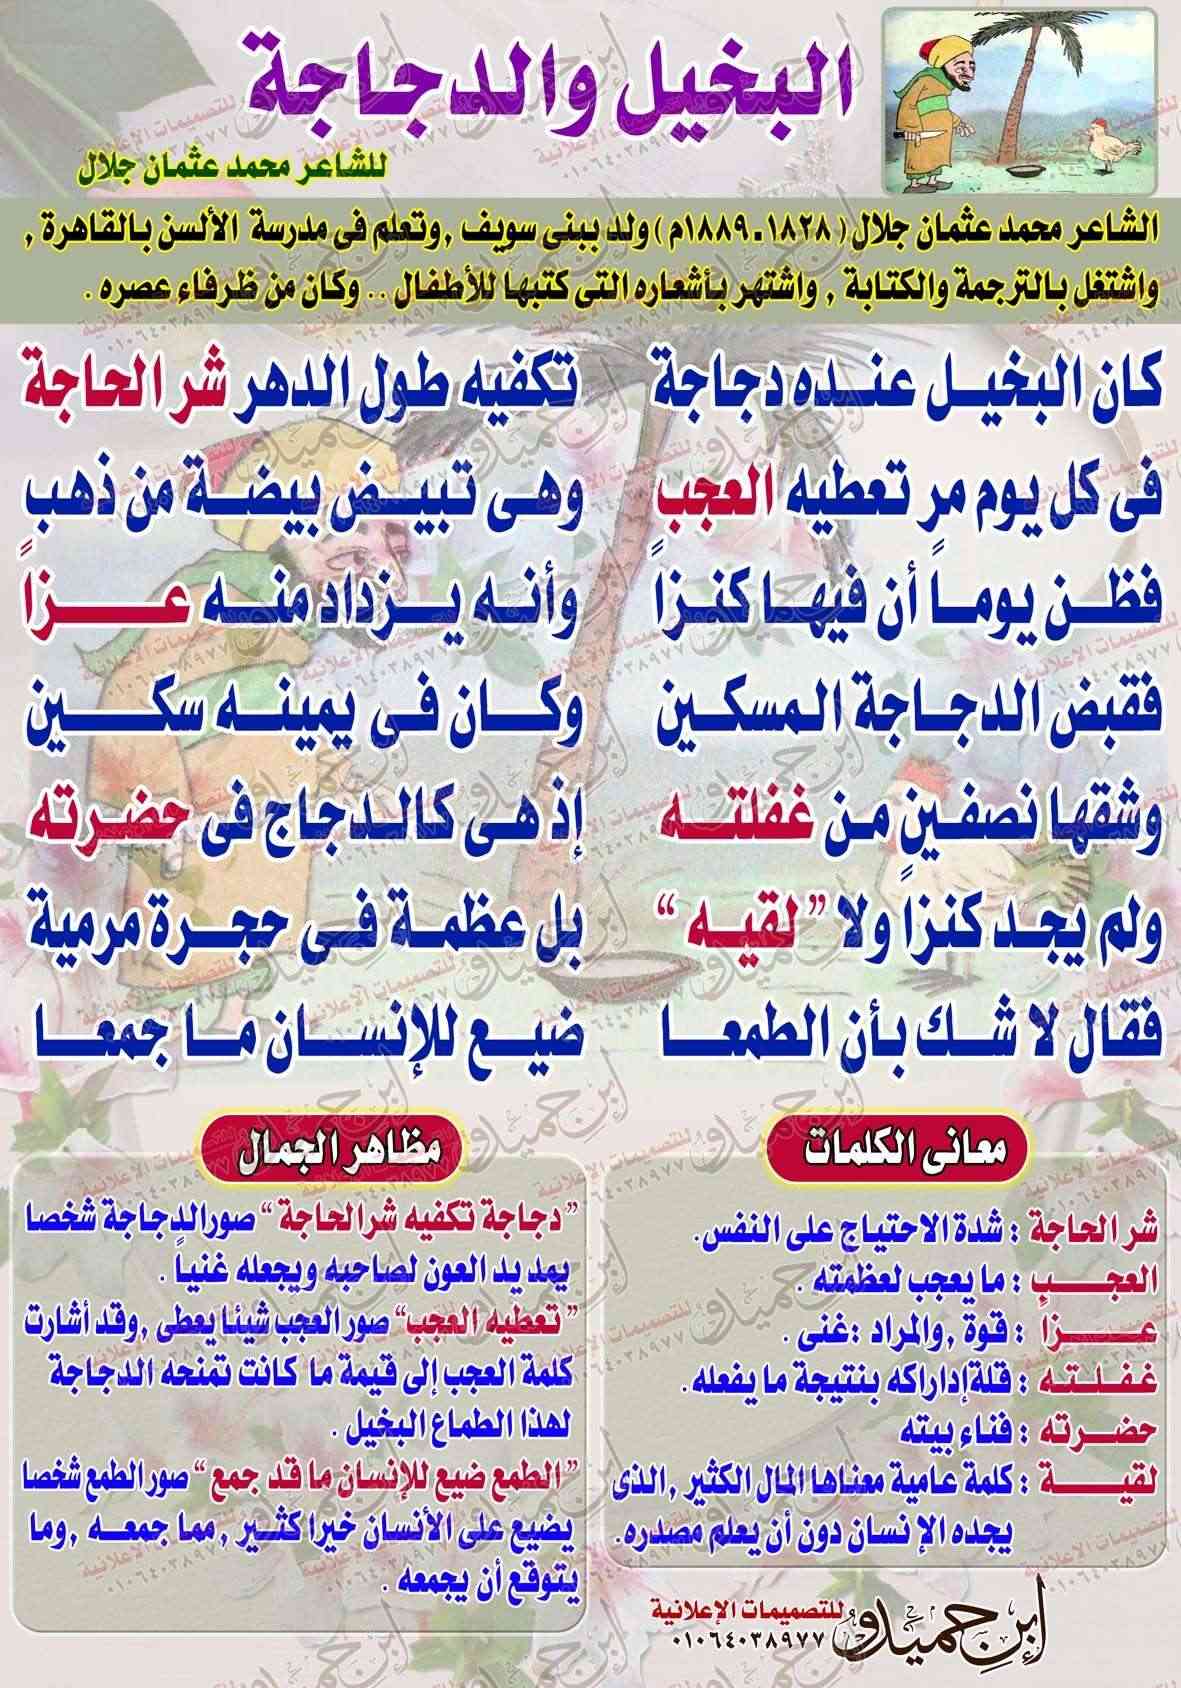 لوحات مدرسية - لغة عربية الصف السادس الابتدائى - البخيل والدجاجة Ouoous18